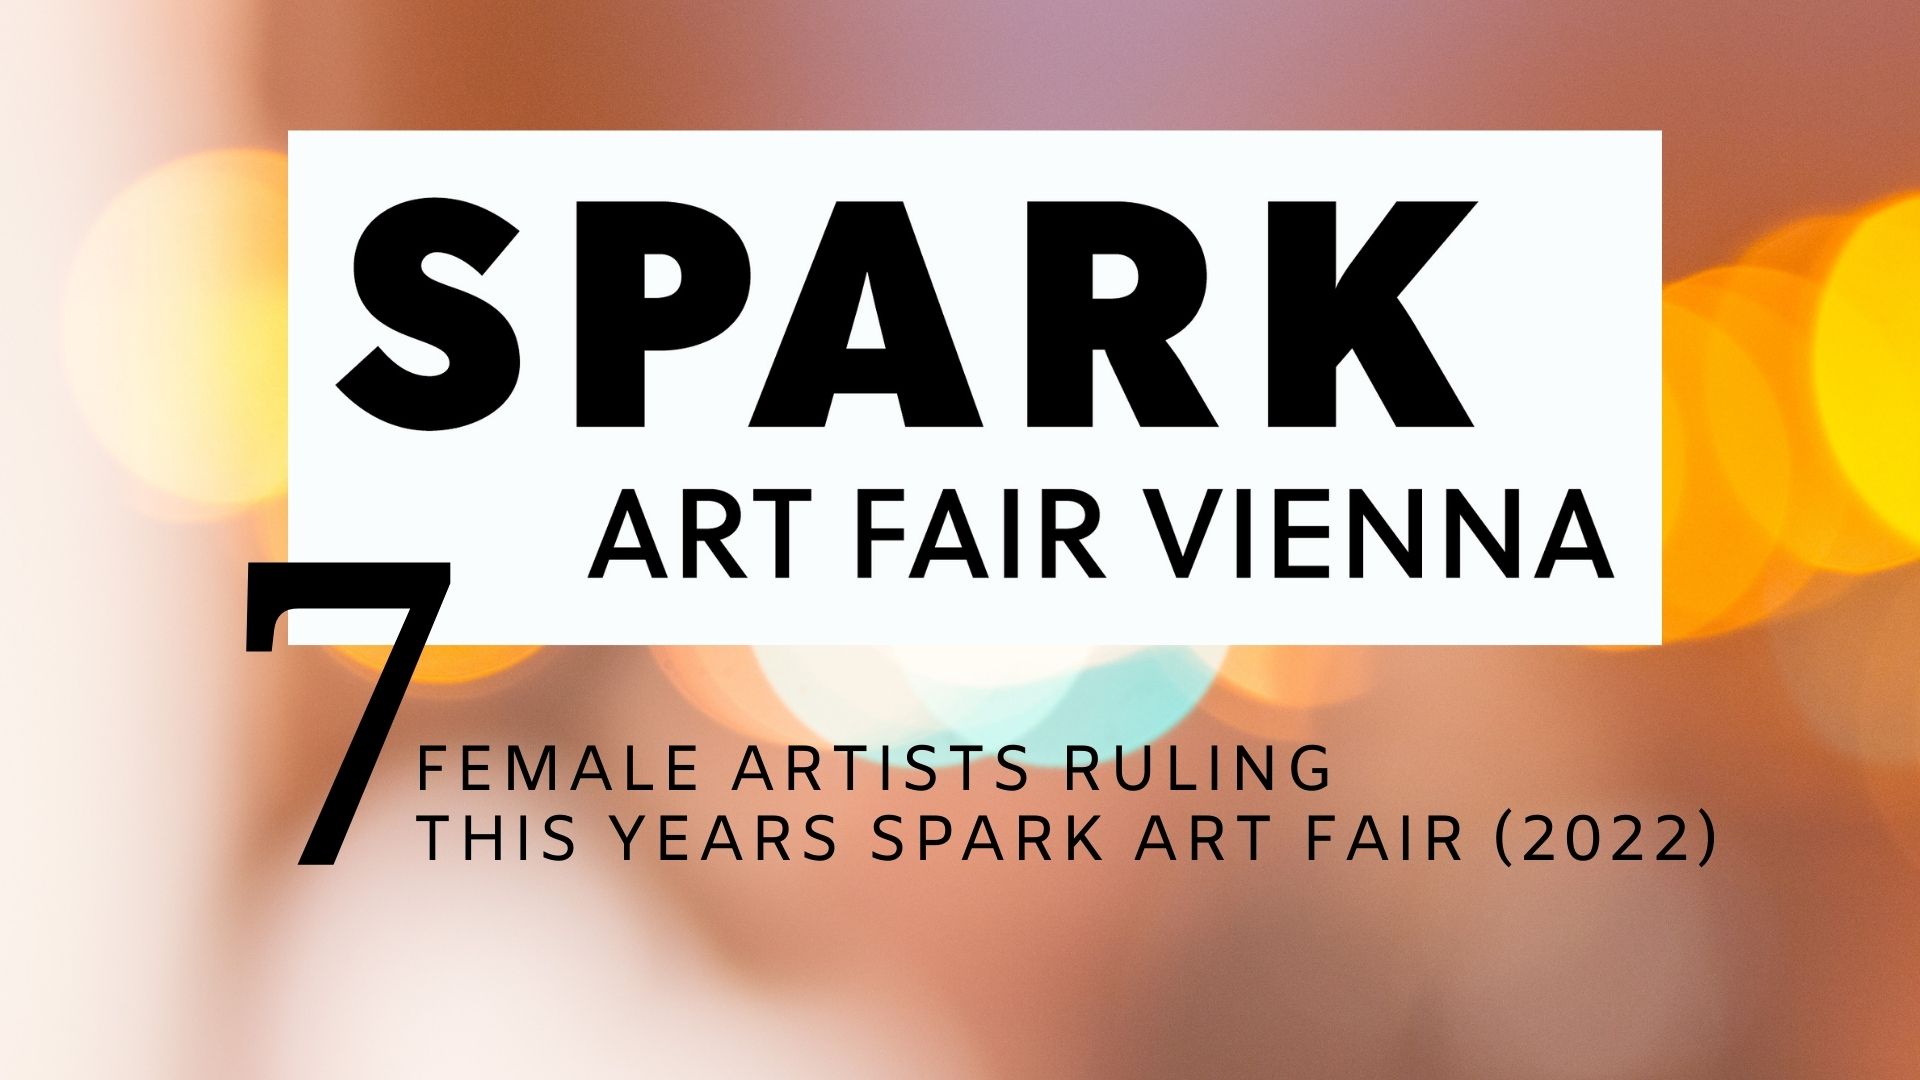 Contemporary Art: Mehr als 80 Galerien zeigen insgesamt 90 Solopräsentationen auf der SPARK ART FAIR VIENNA 2022